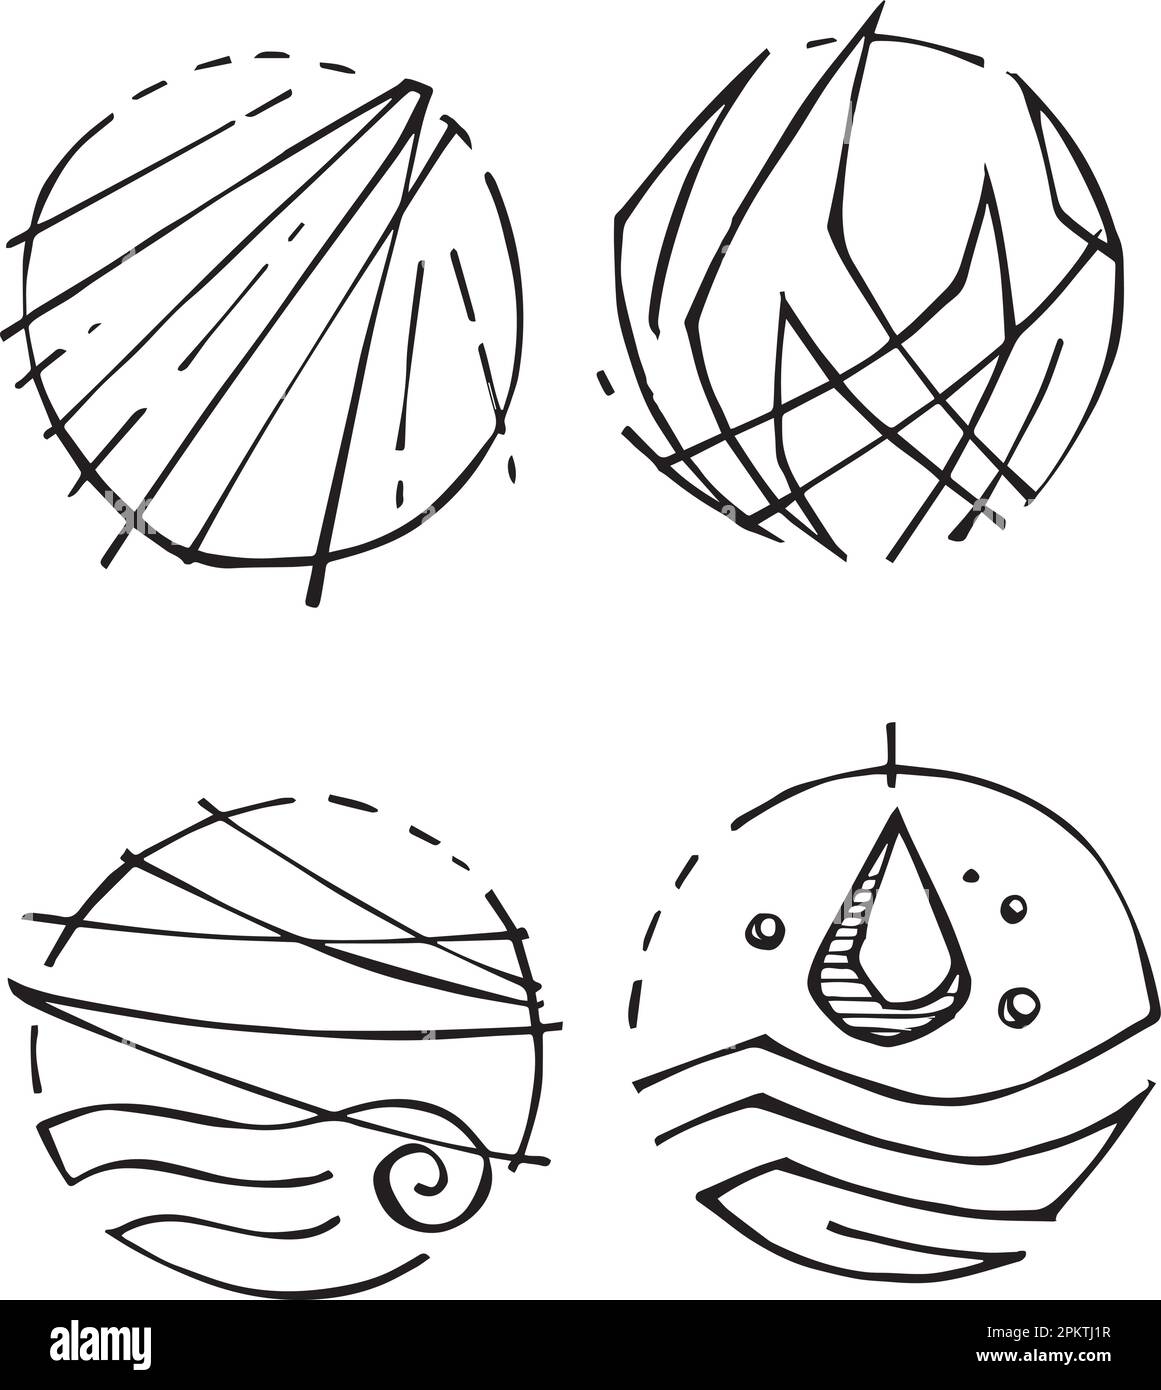 Illustrazione vettoriale disegnata a mano o disegno di simboli cristiani Illustrazione Vettoriale